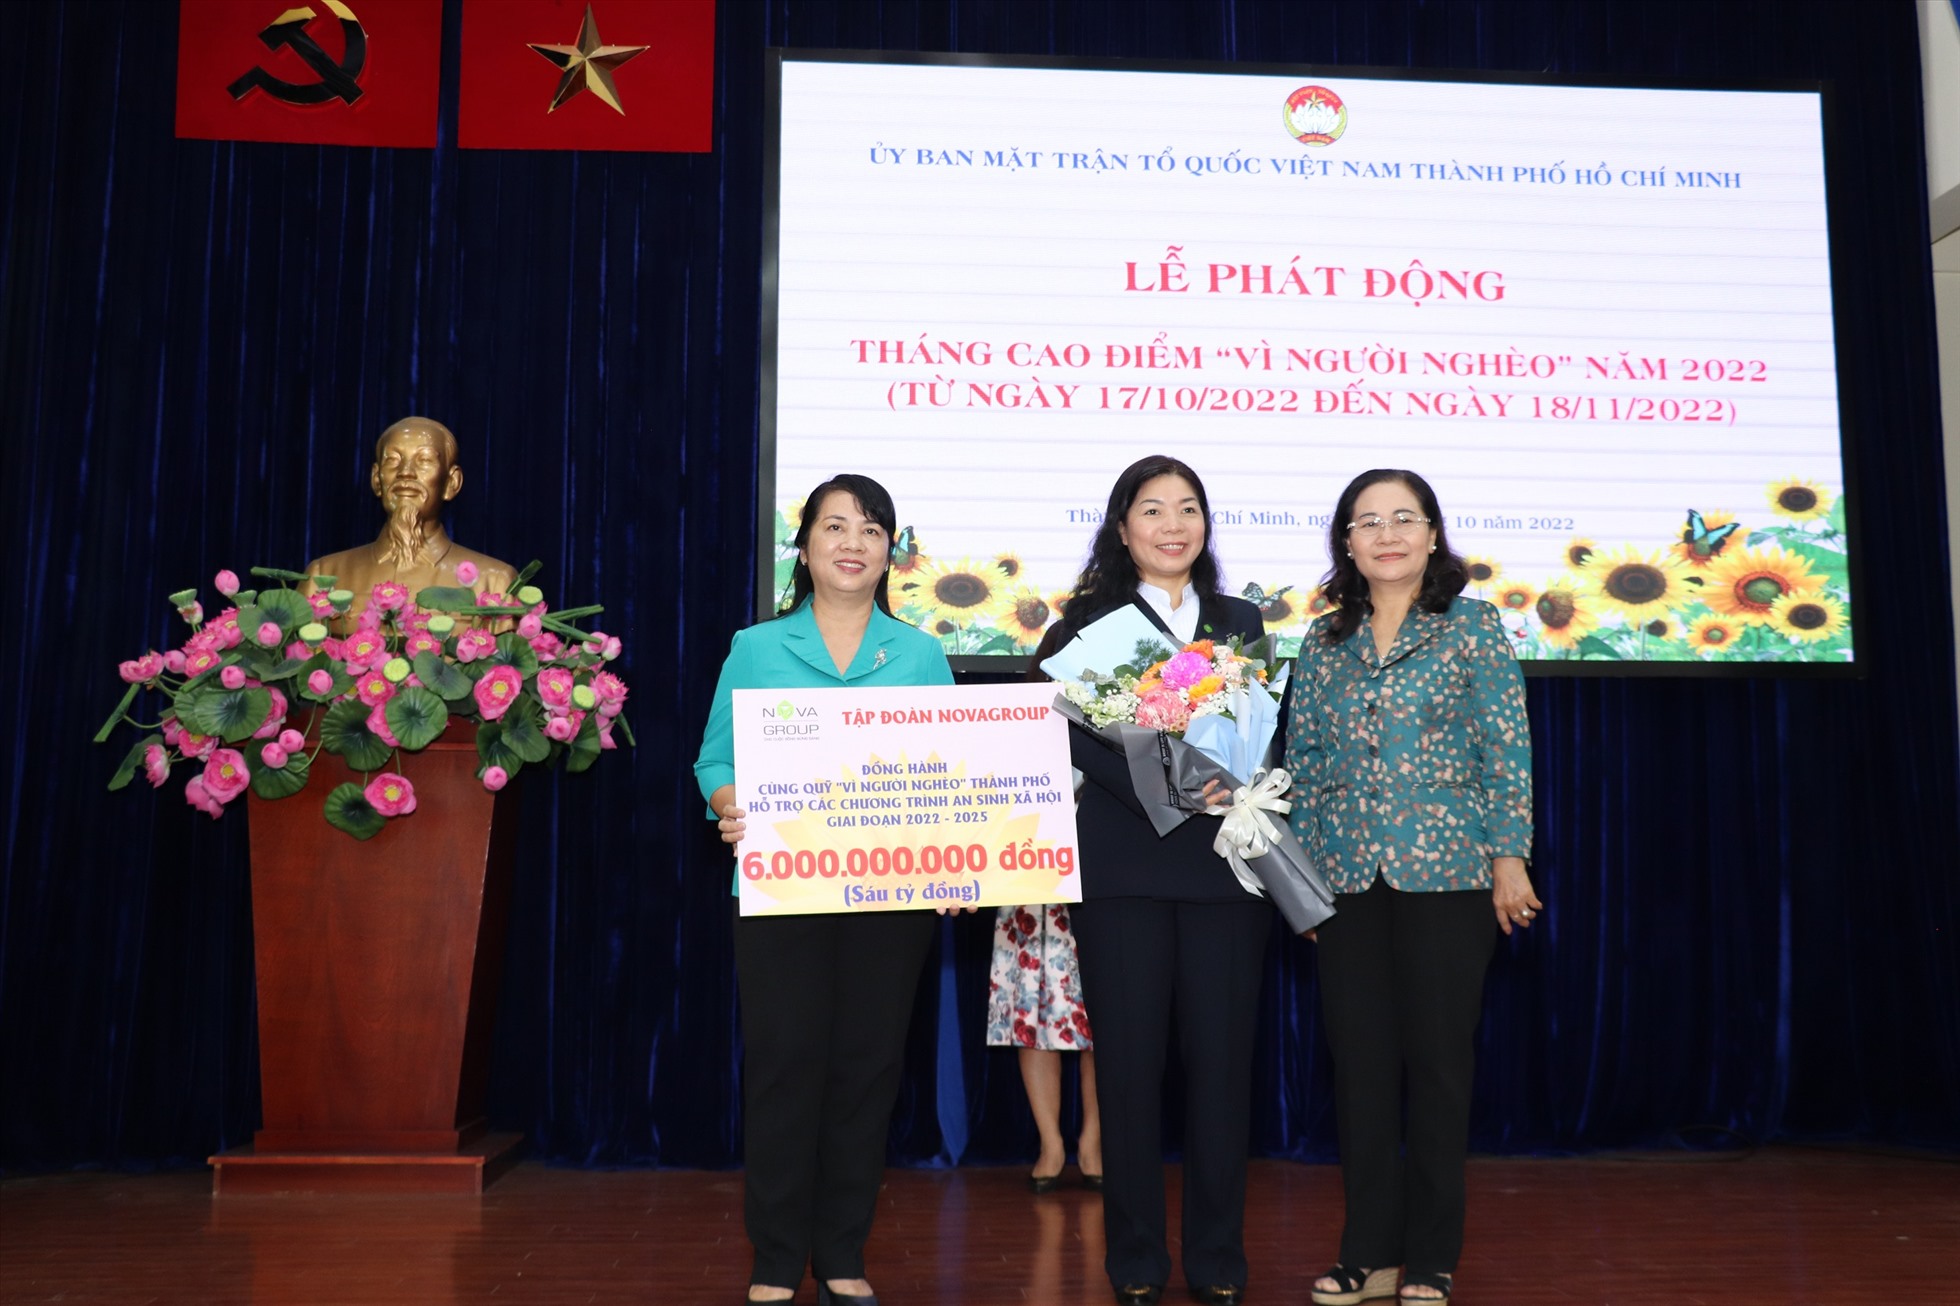 Đồng chí Nguyễn Thị Lệ và đồng chí Trần Kim Yến tiếp nhận kinh phí 6 tỉ đồng từ bà Hoàng Thu Châu - Tổng giám đốc Nova Group.